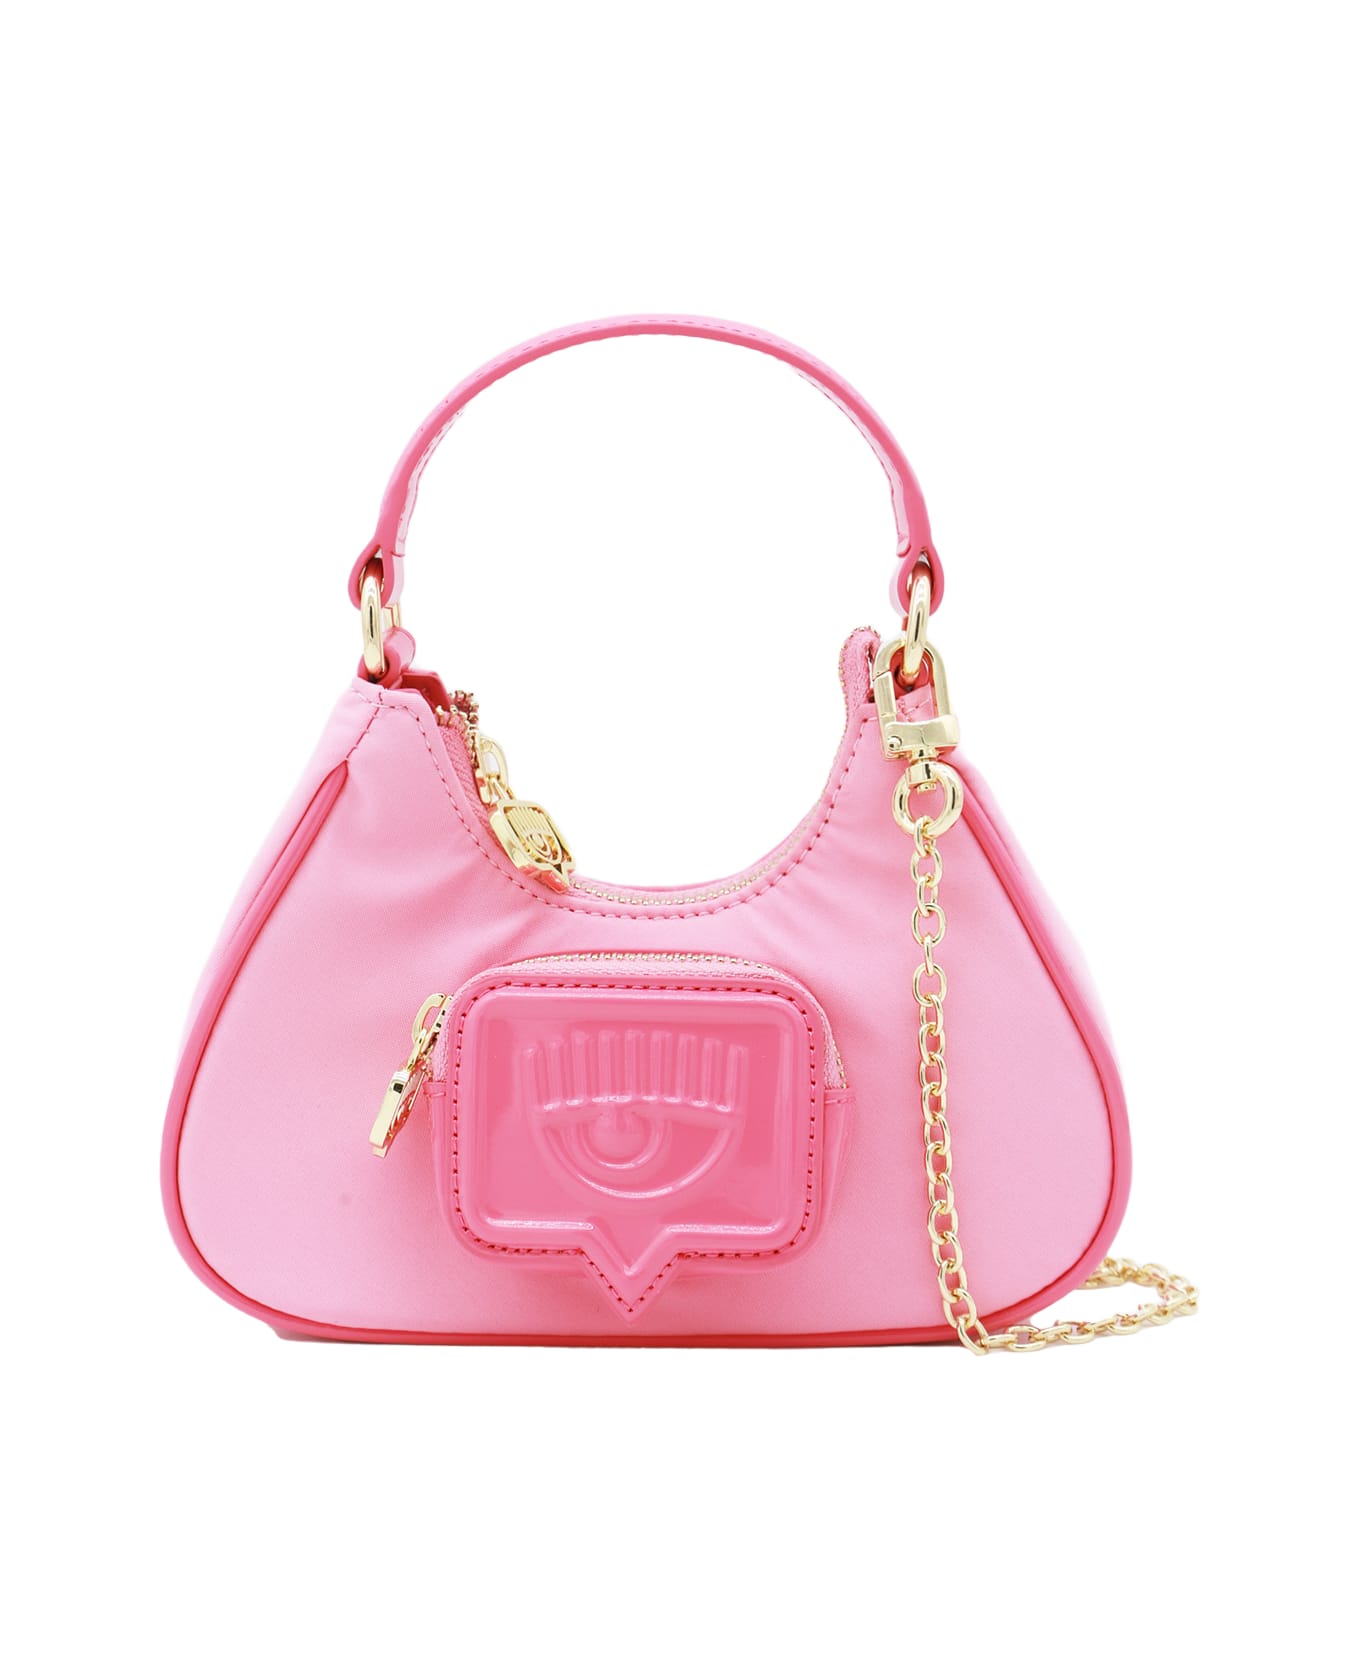 Chiara Ferragni Pink Top Handle Bag - SACHET PINK